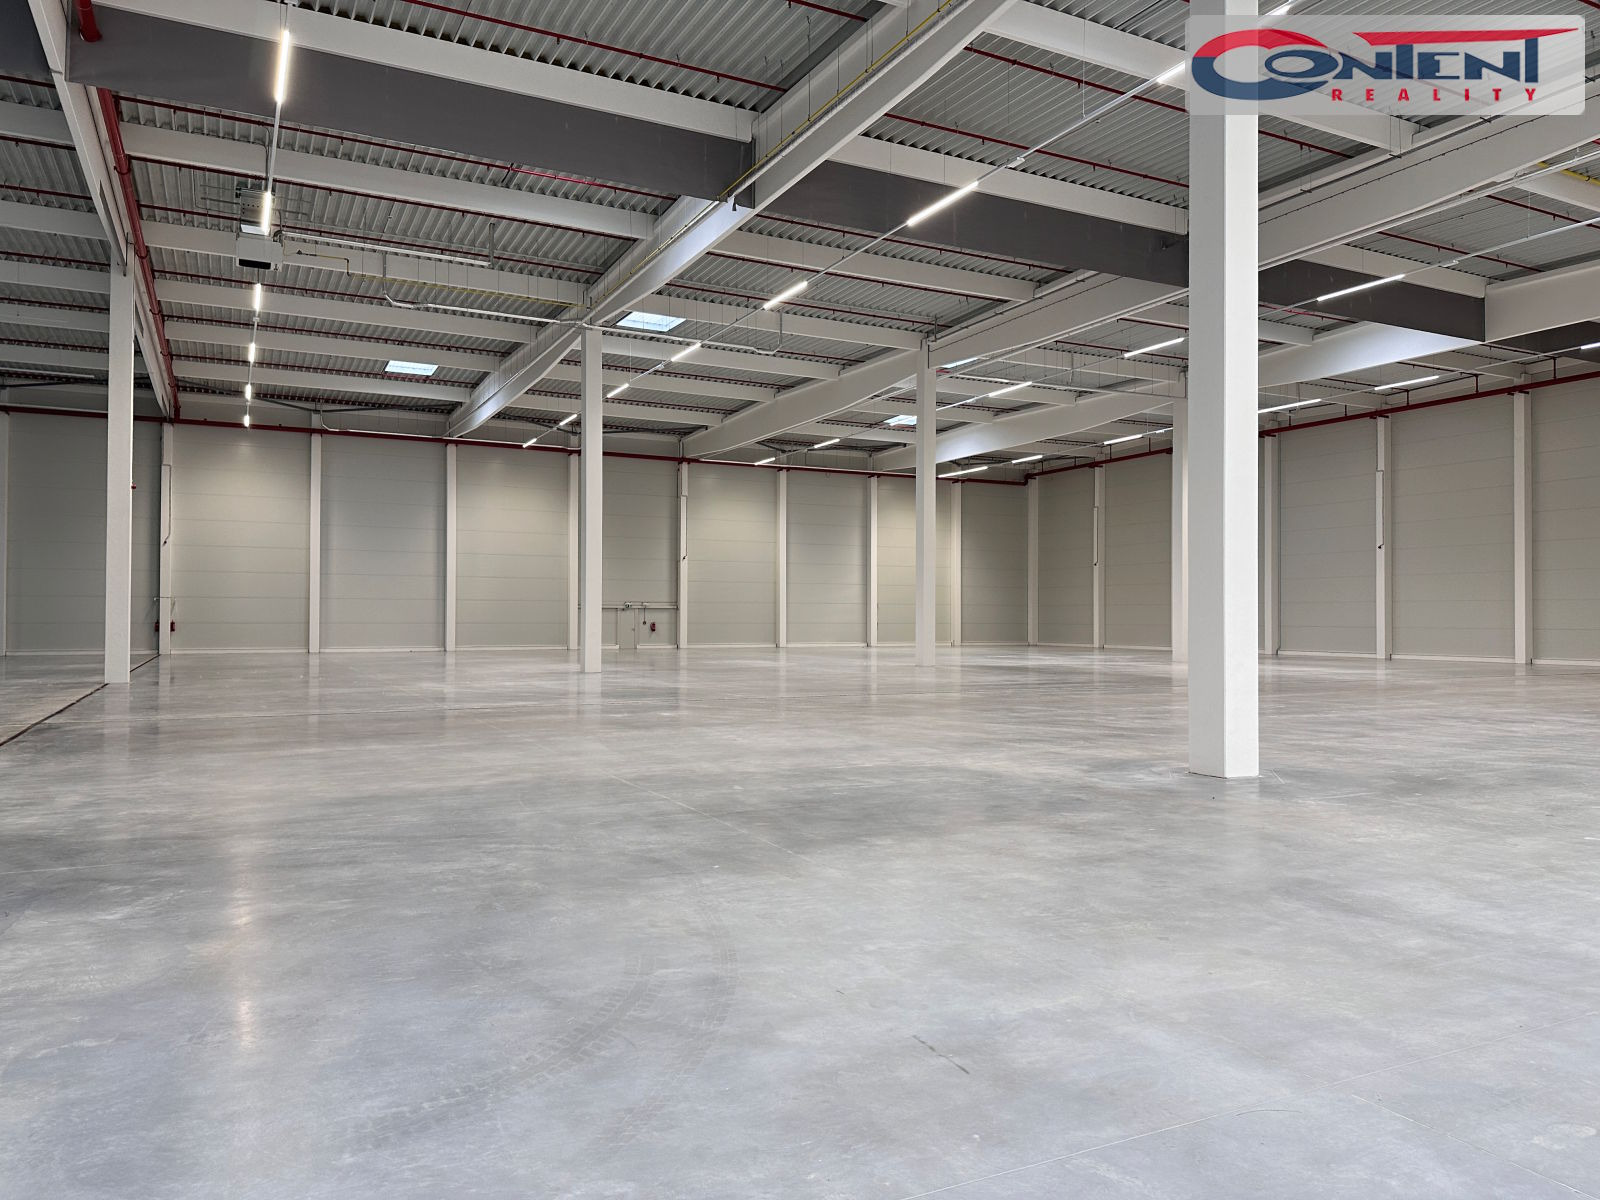 Pronájem skladu nebo výrobních prostor 29.469 m²,  Plzeň - Myslinka, D5